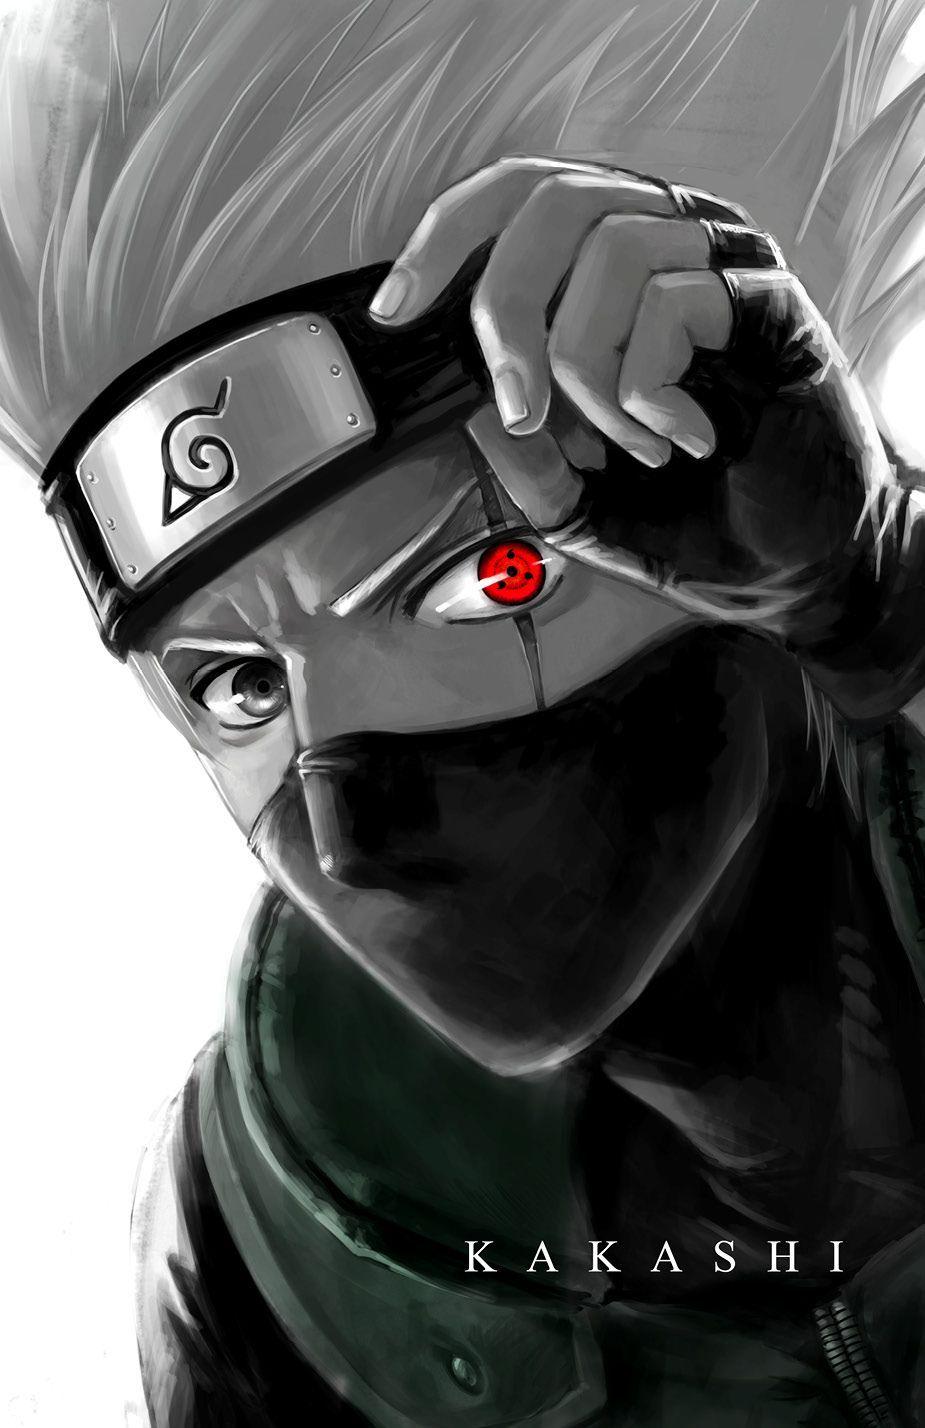 Hình ảnh Kakashi ngầu nhất  Ninja sao chép thần thái